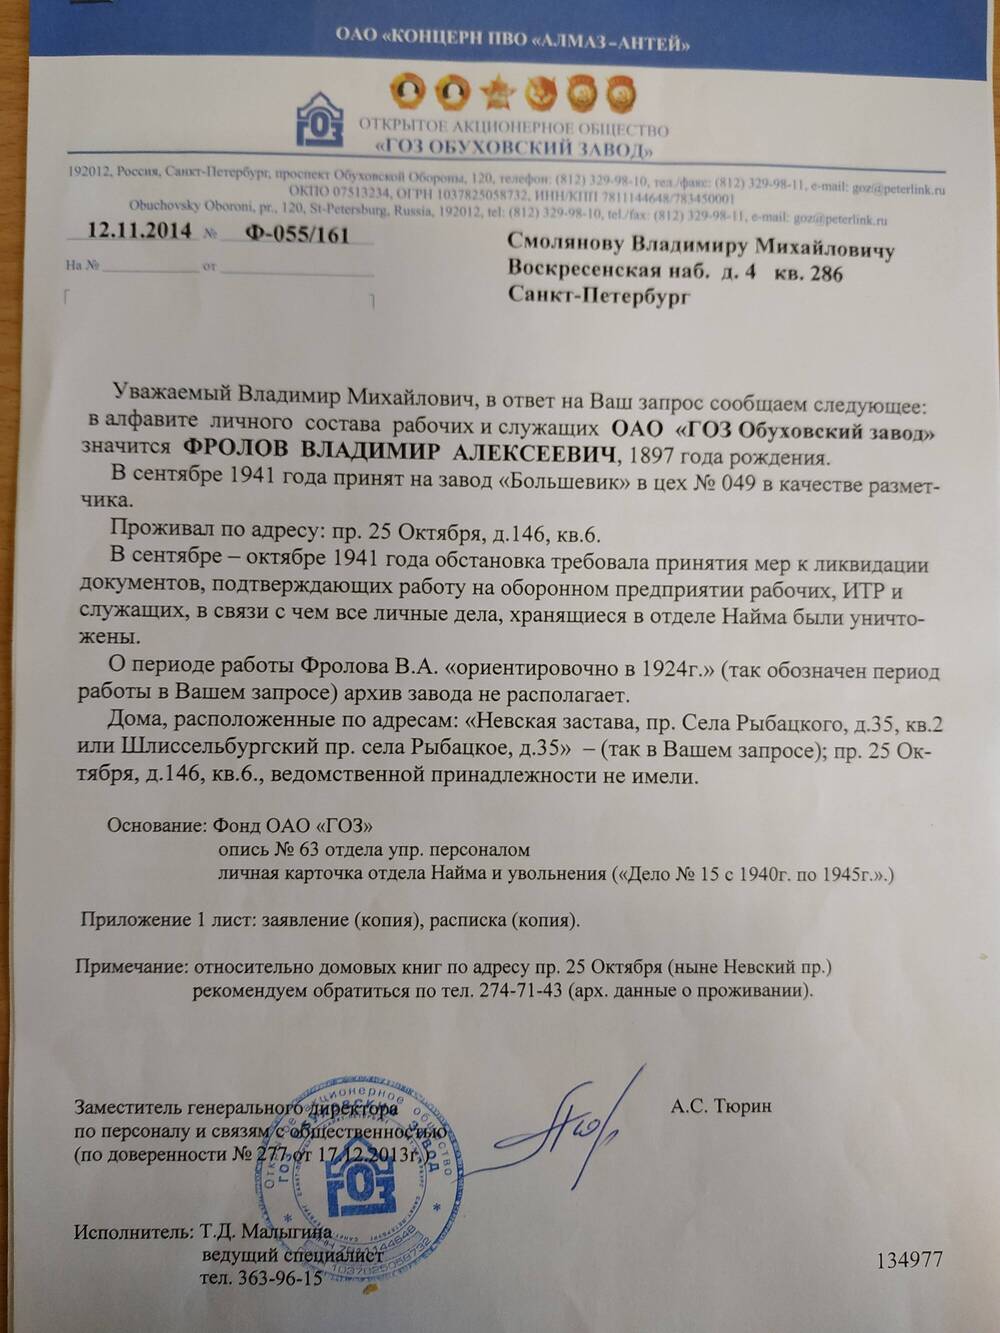 Справка ОАО «ГОЗ» Ф-055/161 от  12.11.2014 г.